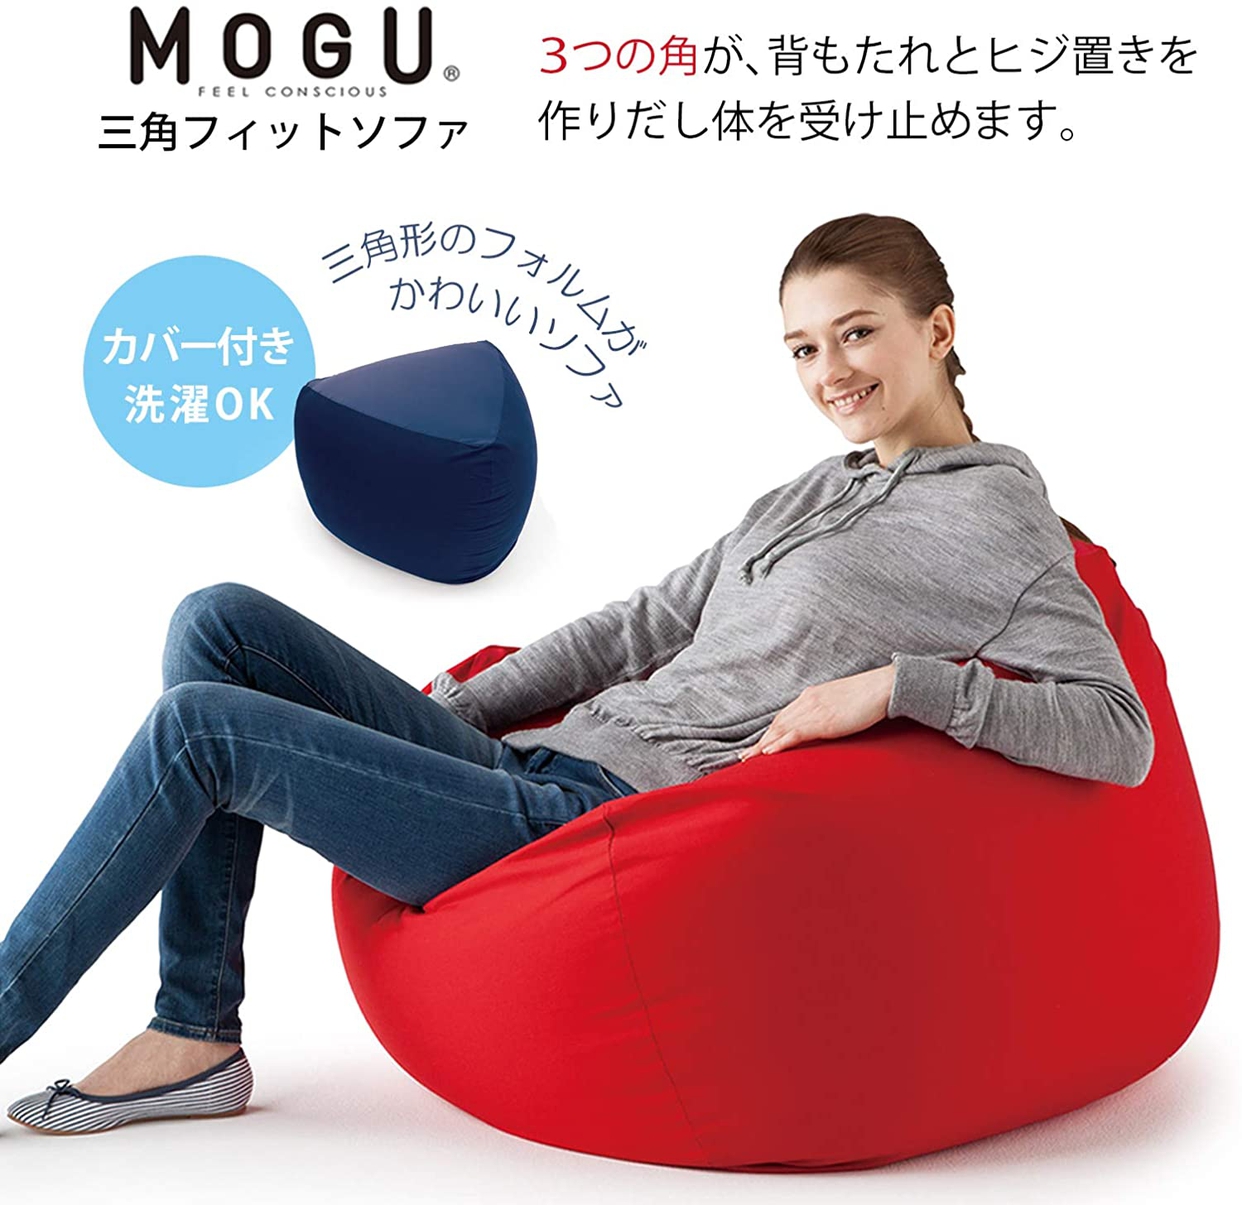 MOGU(モグ) 三角フィットソファの商品画像2 